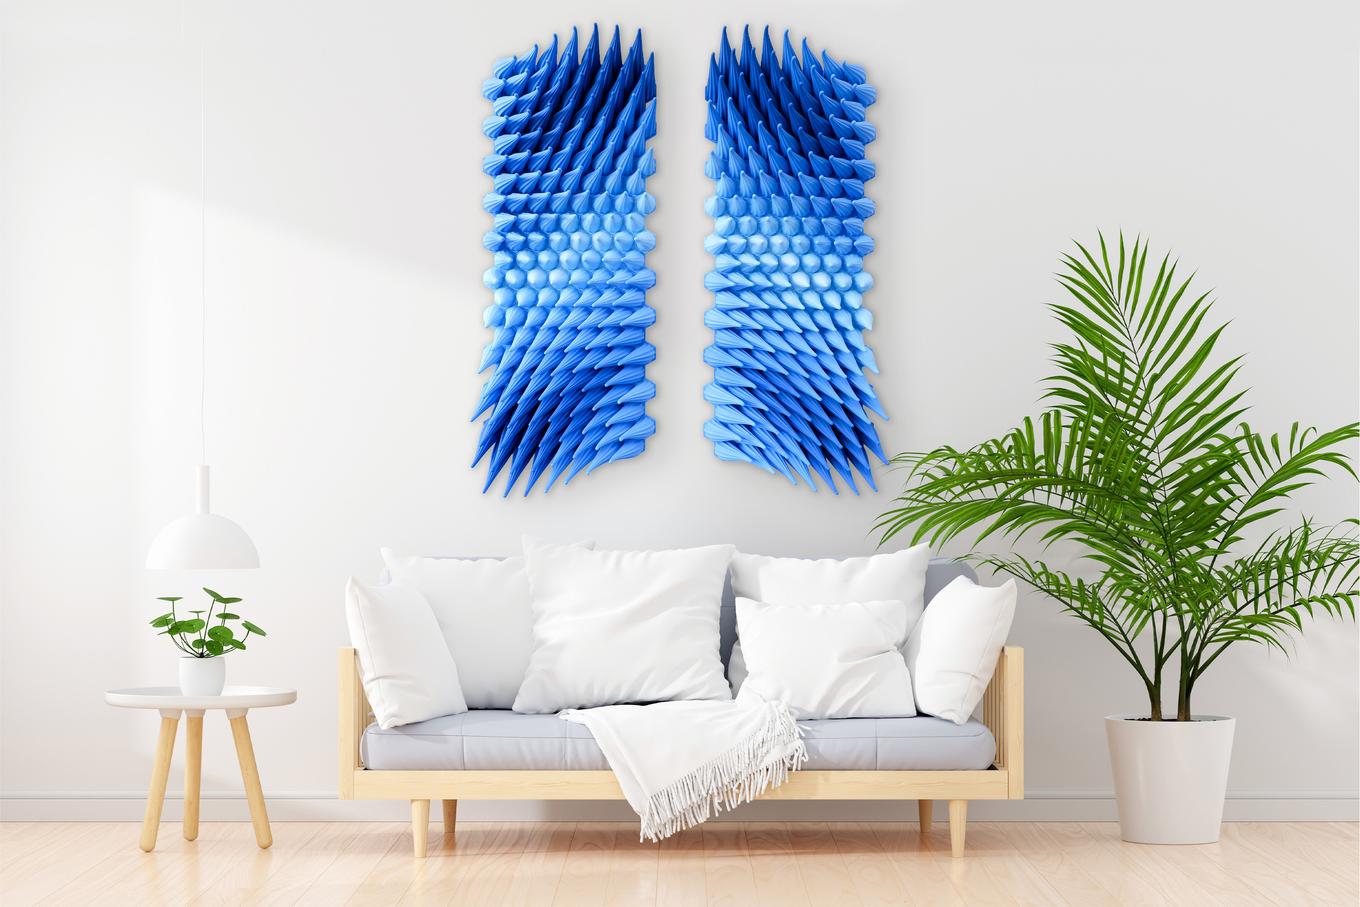 Diverging Storm | Herschel Shapiro | Modern Dimensional 3D Wall Art Mosaic 